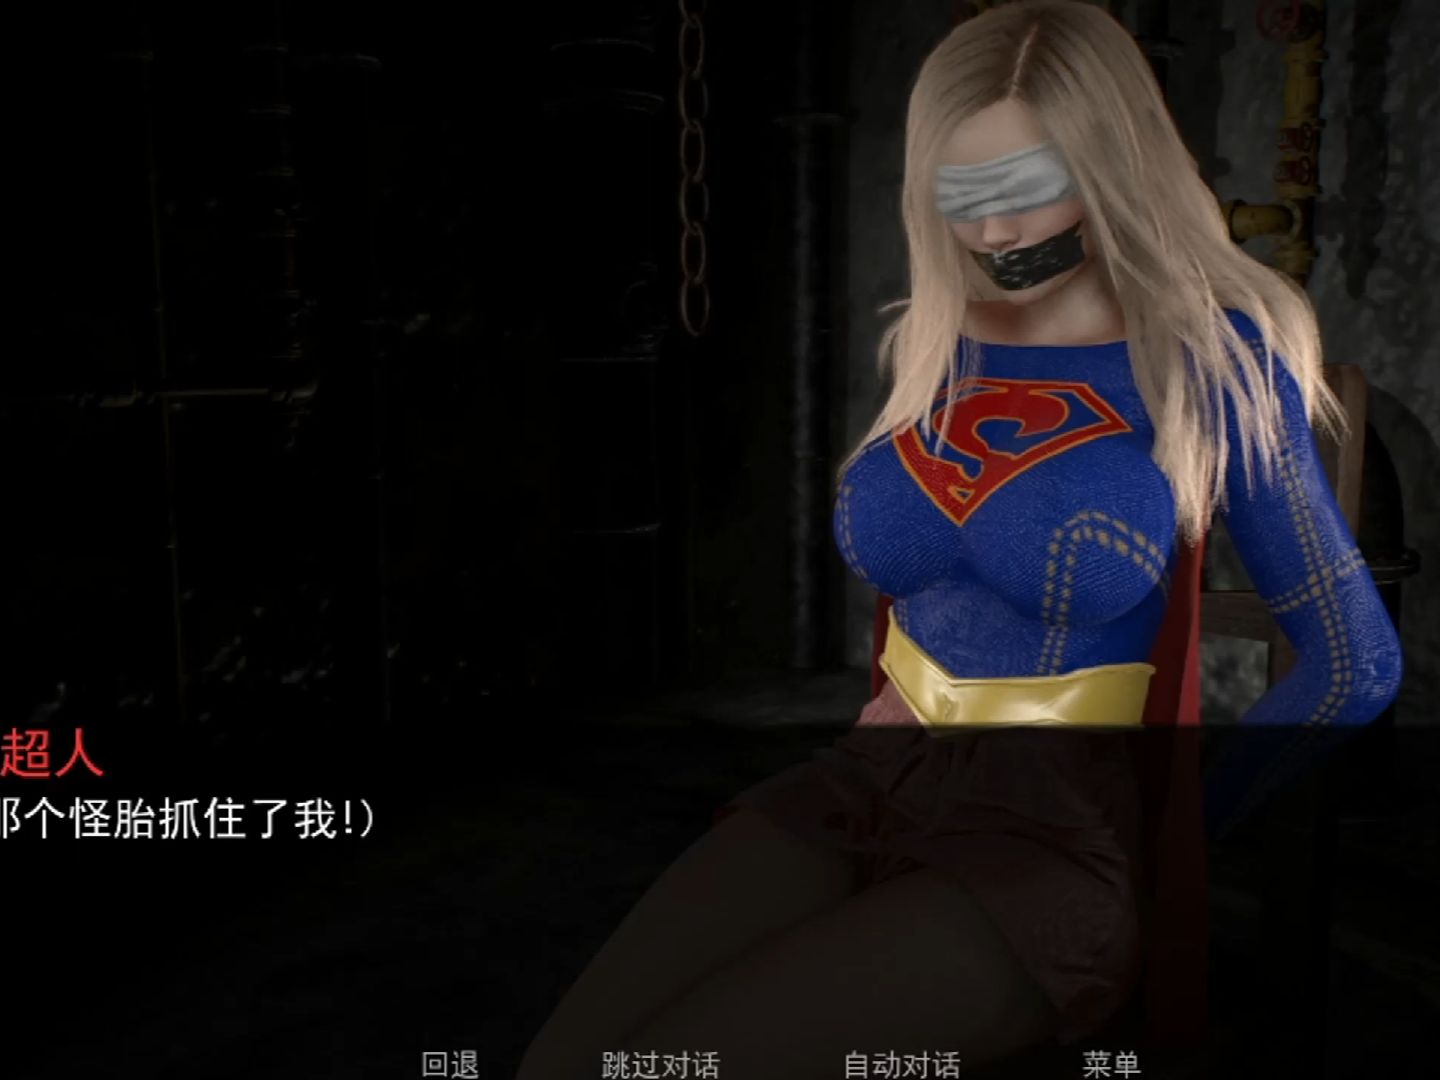 【女超人】pc/安卓~被俘获的女超人,坏人实在是太可恶了!